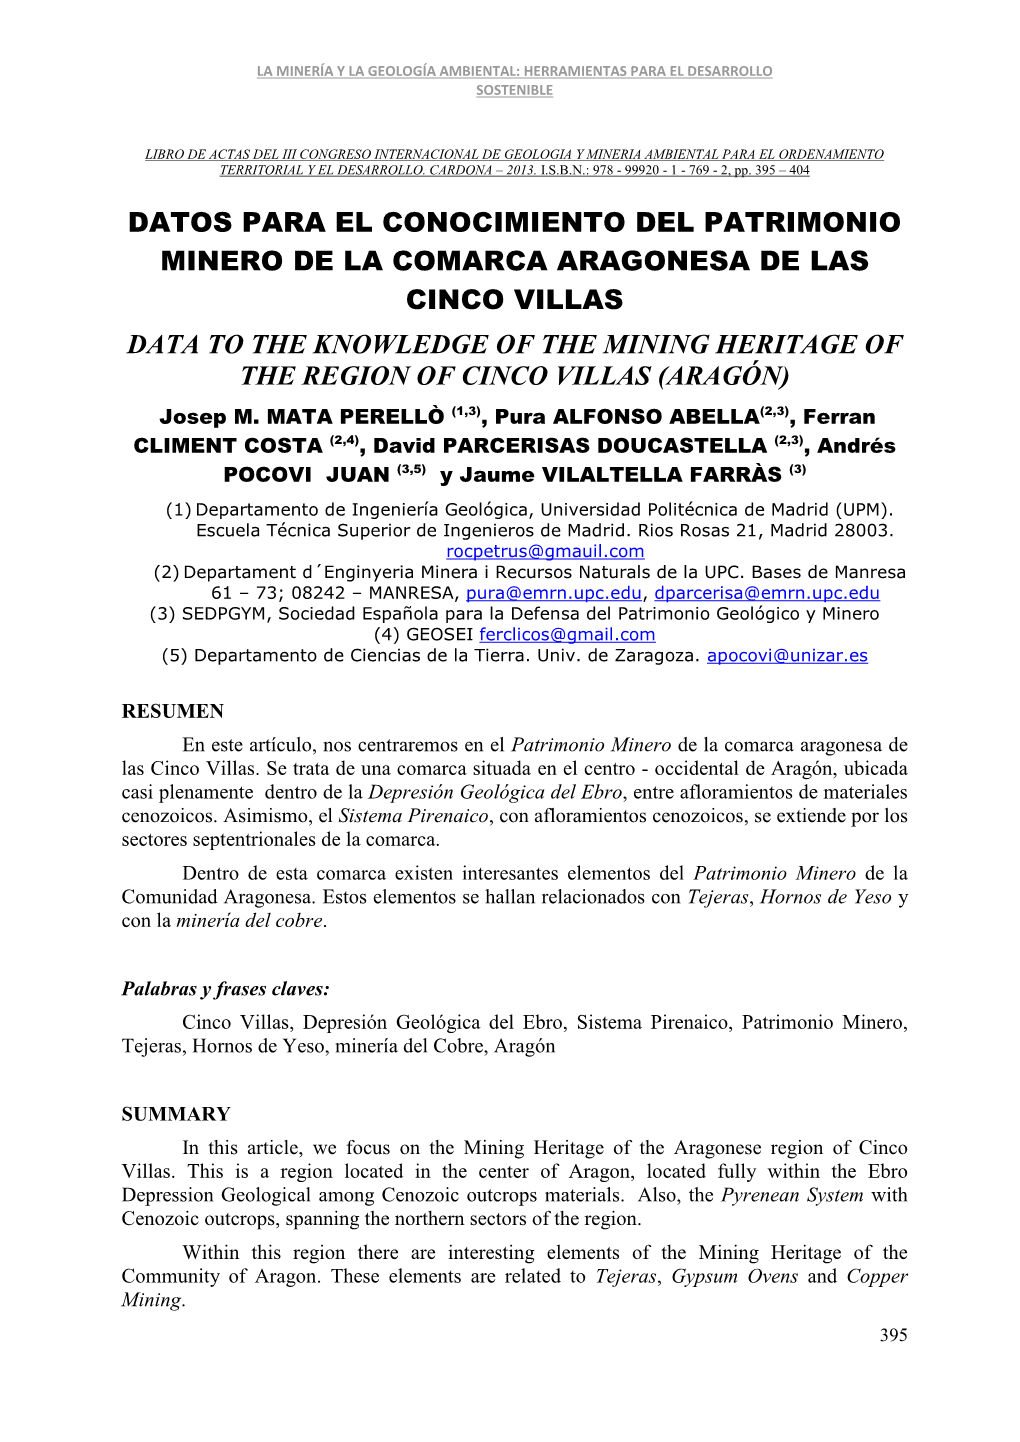 Datos Para El Conocimiento Del Patrimonio Minero De La Comarca Aragonesa De Las Cinco Villas